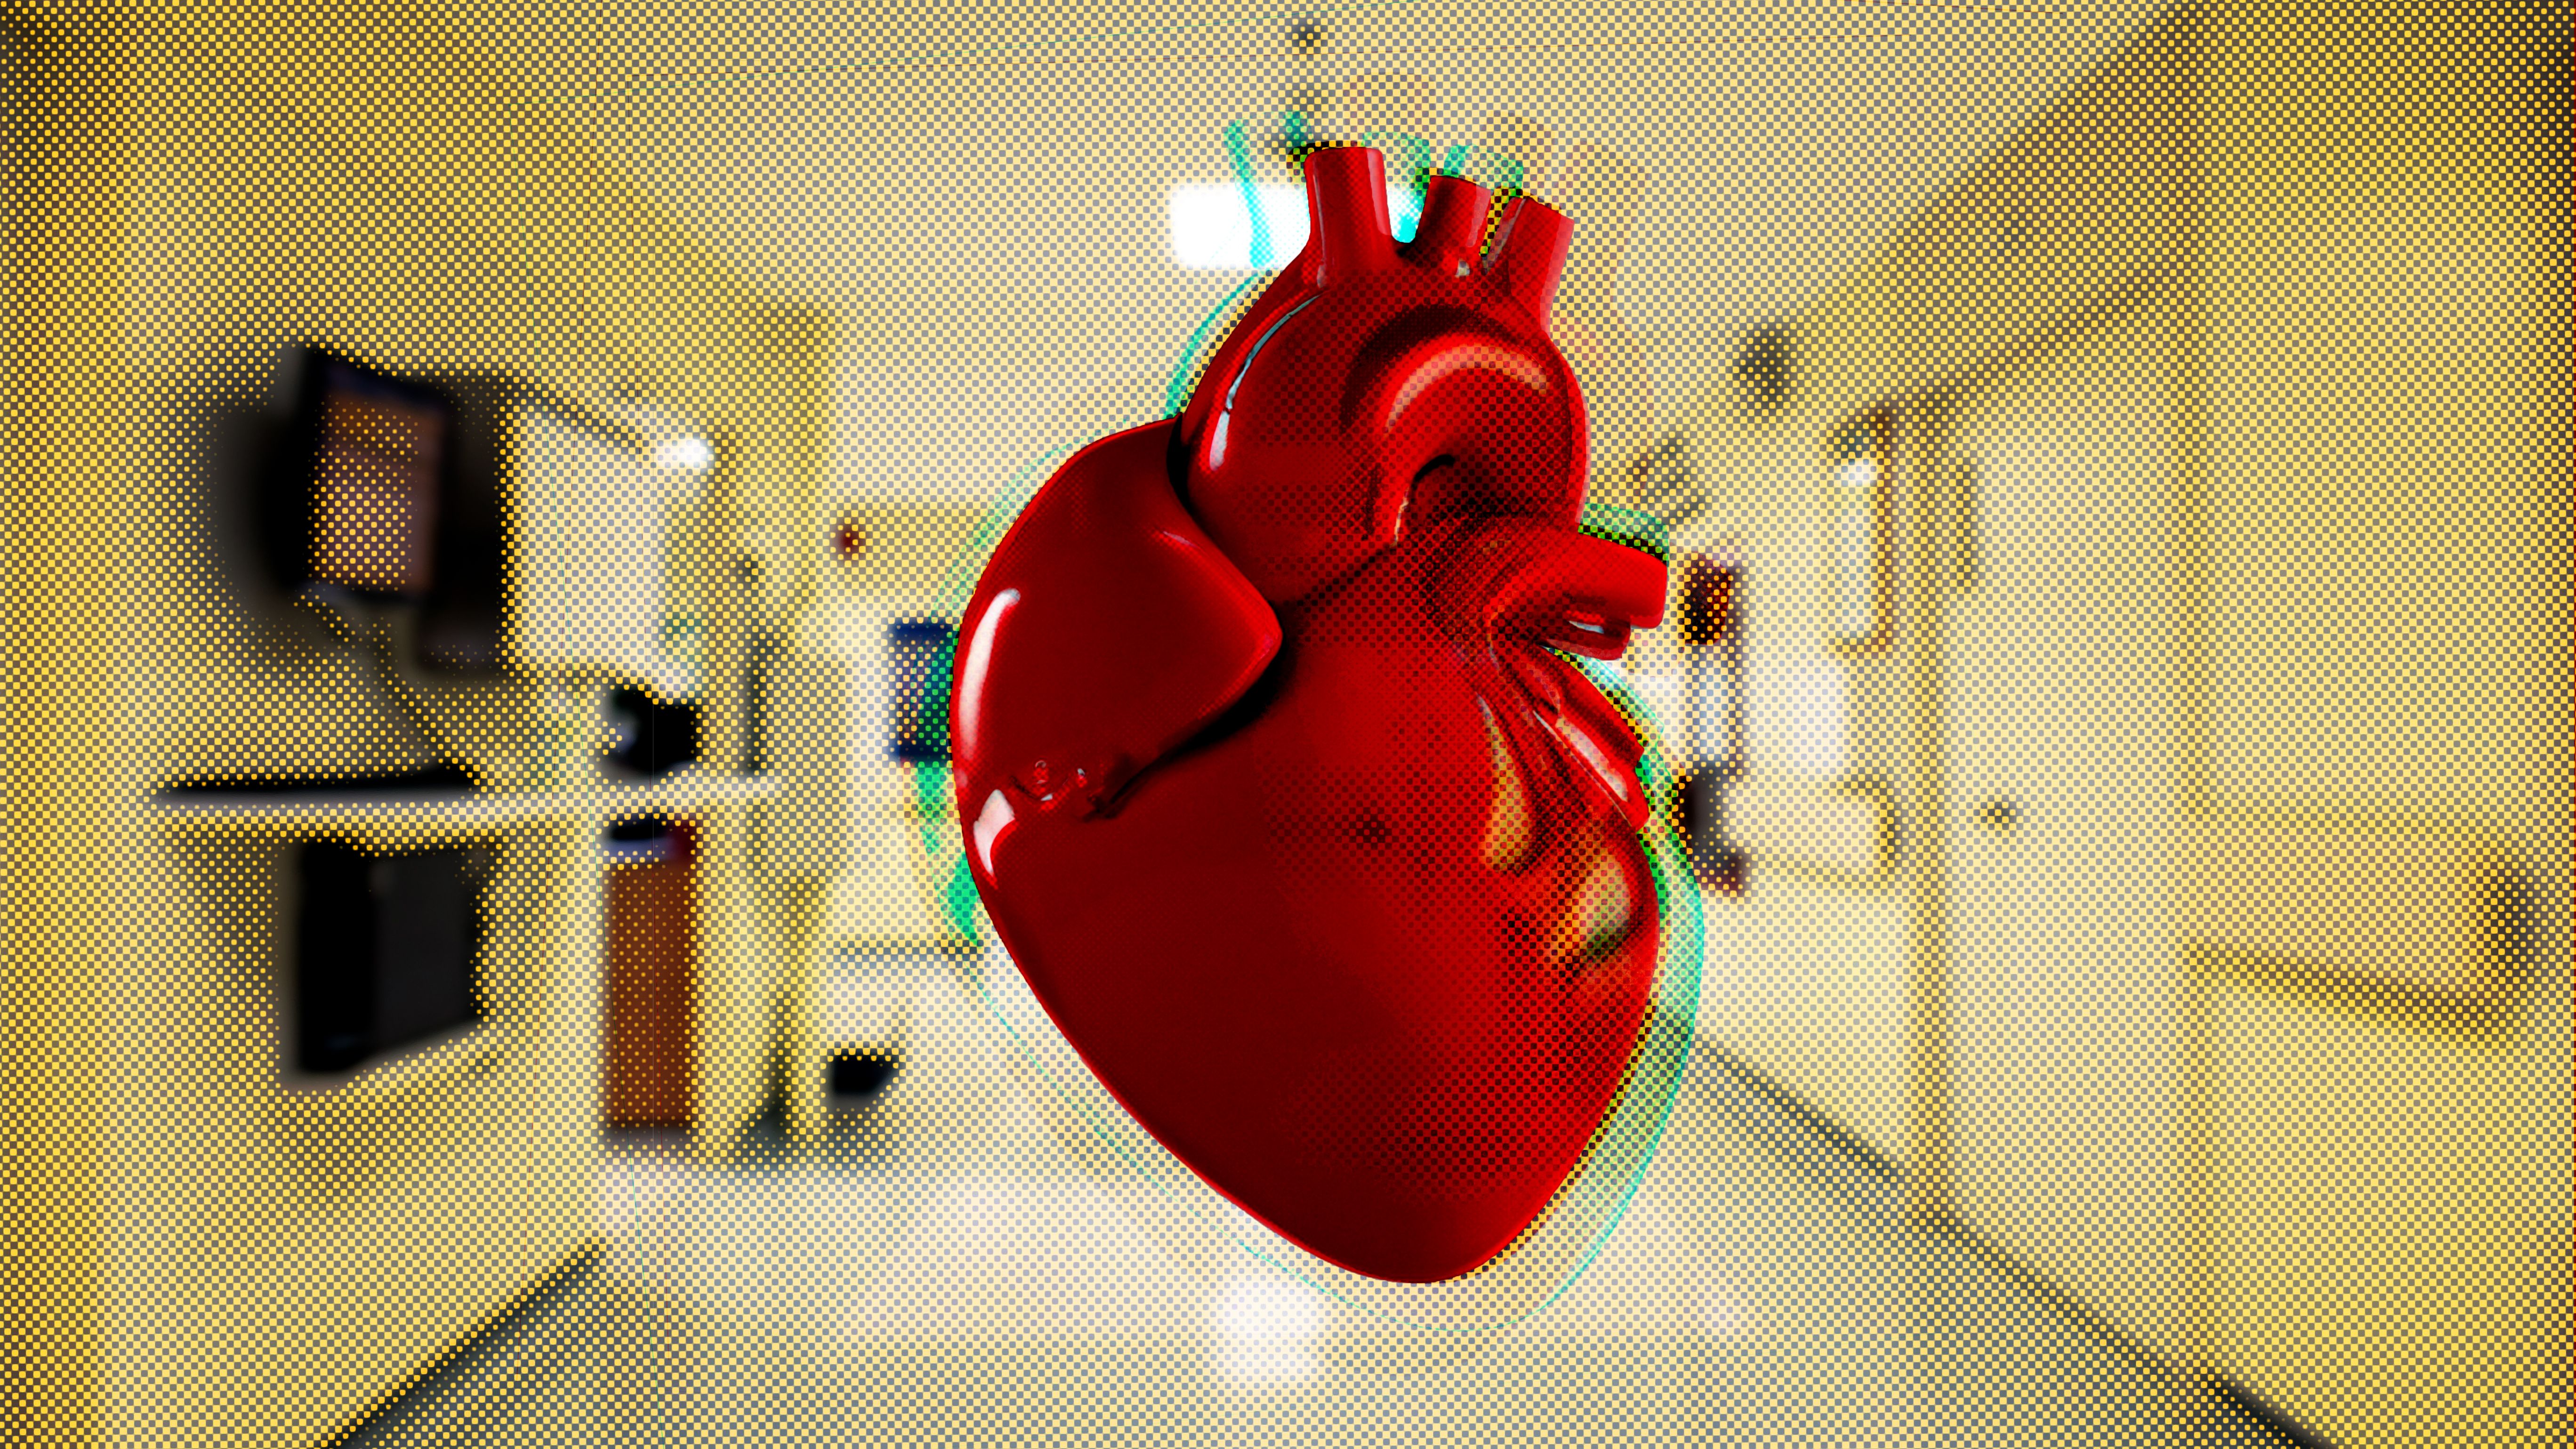 La sala de Hemodinámica del área de Cardiología del Hospital de Jerez cuenta actualmente con un solo quirófano, lo que está incrementando las listas de espera.